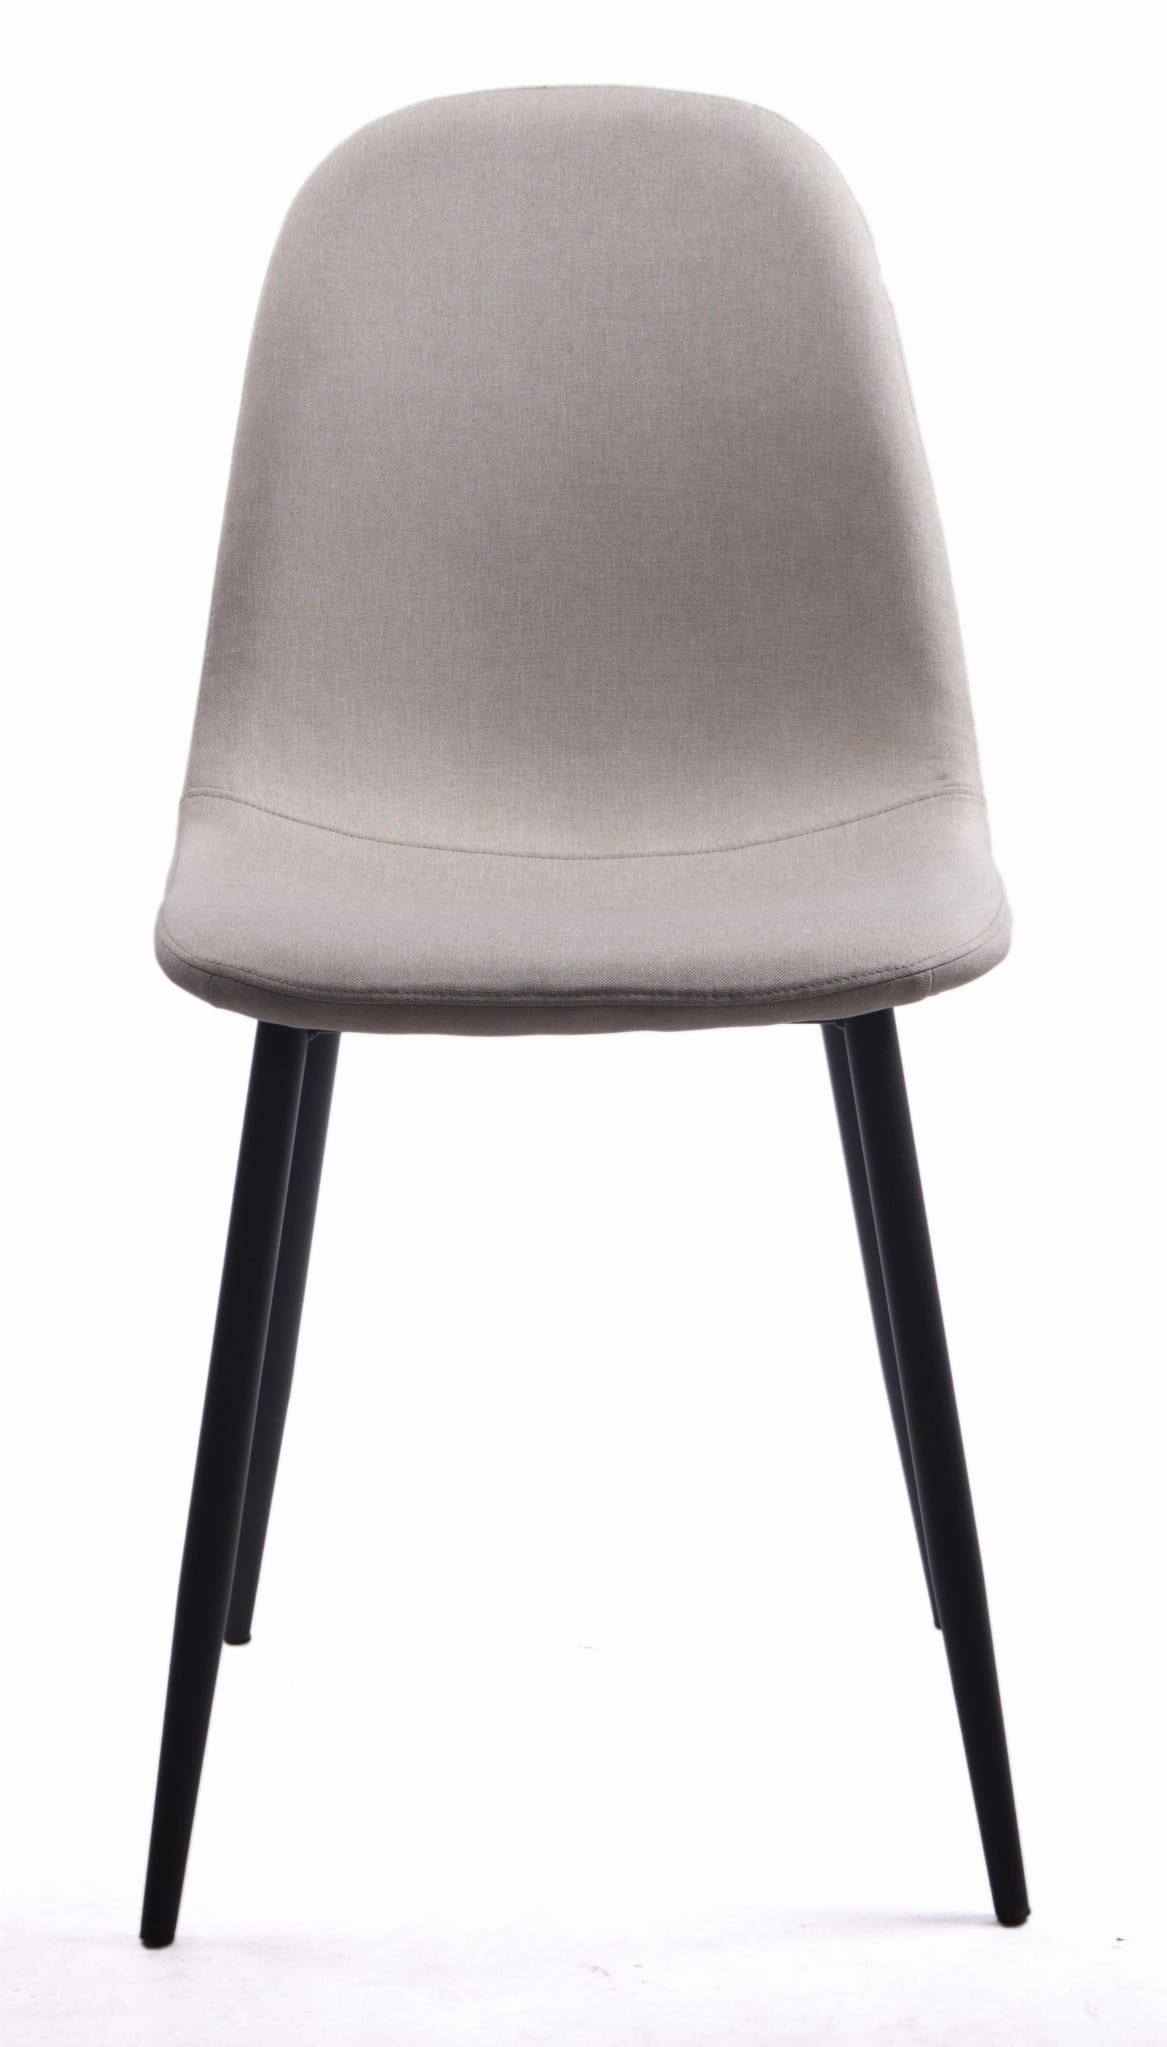 Jídelní židle DART béžová (černé nohy)